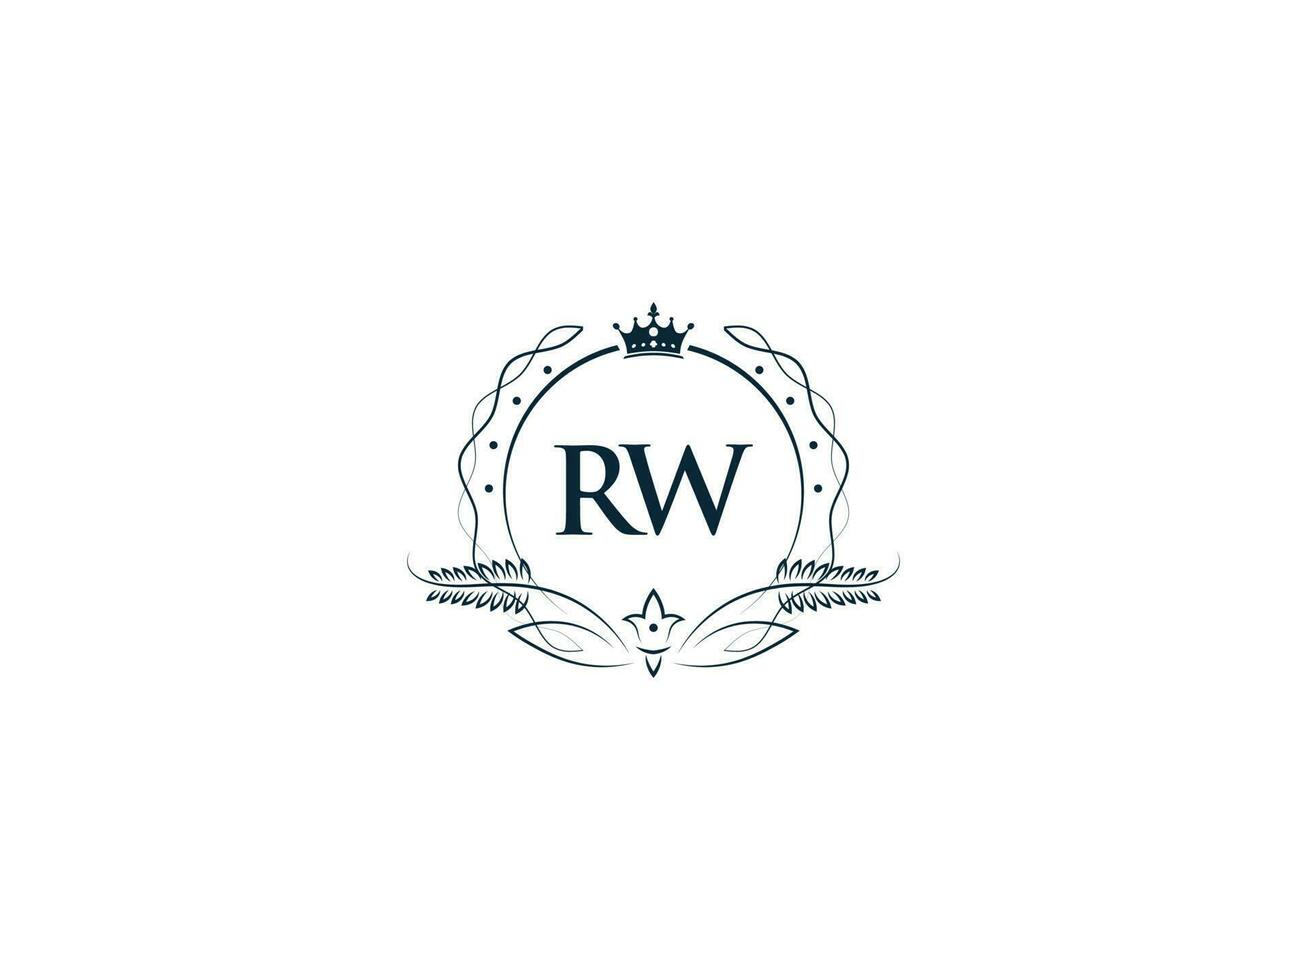 real corona rw logo icono, femenino lujo rw wr logo letra vector